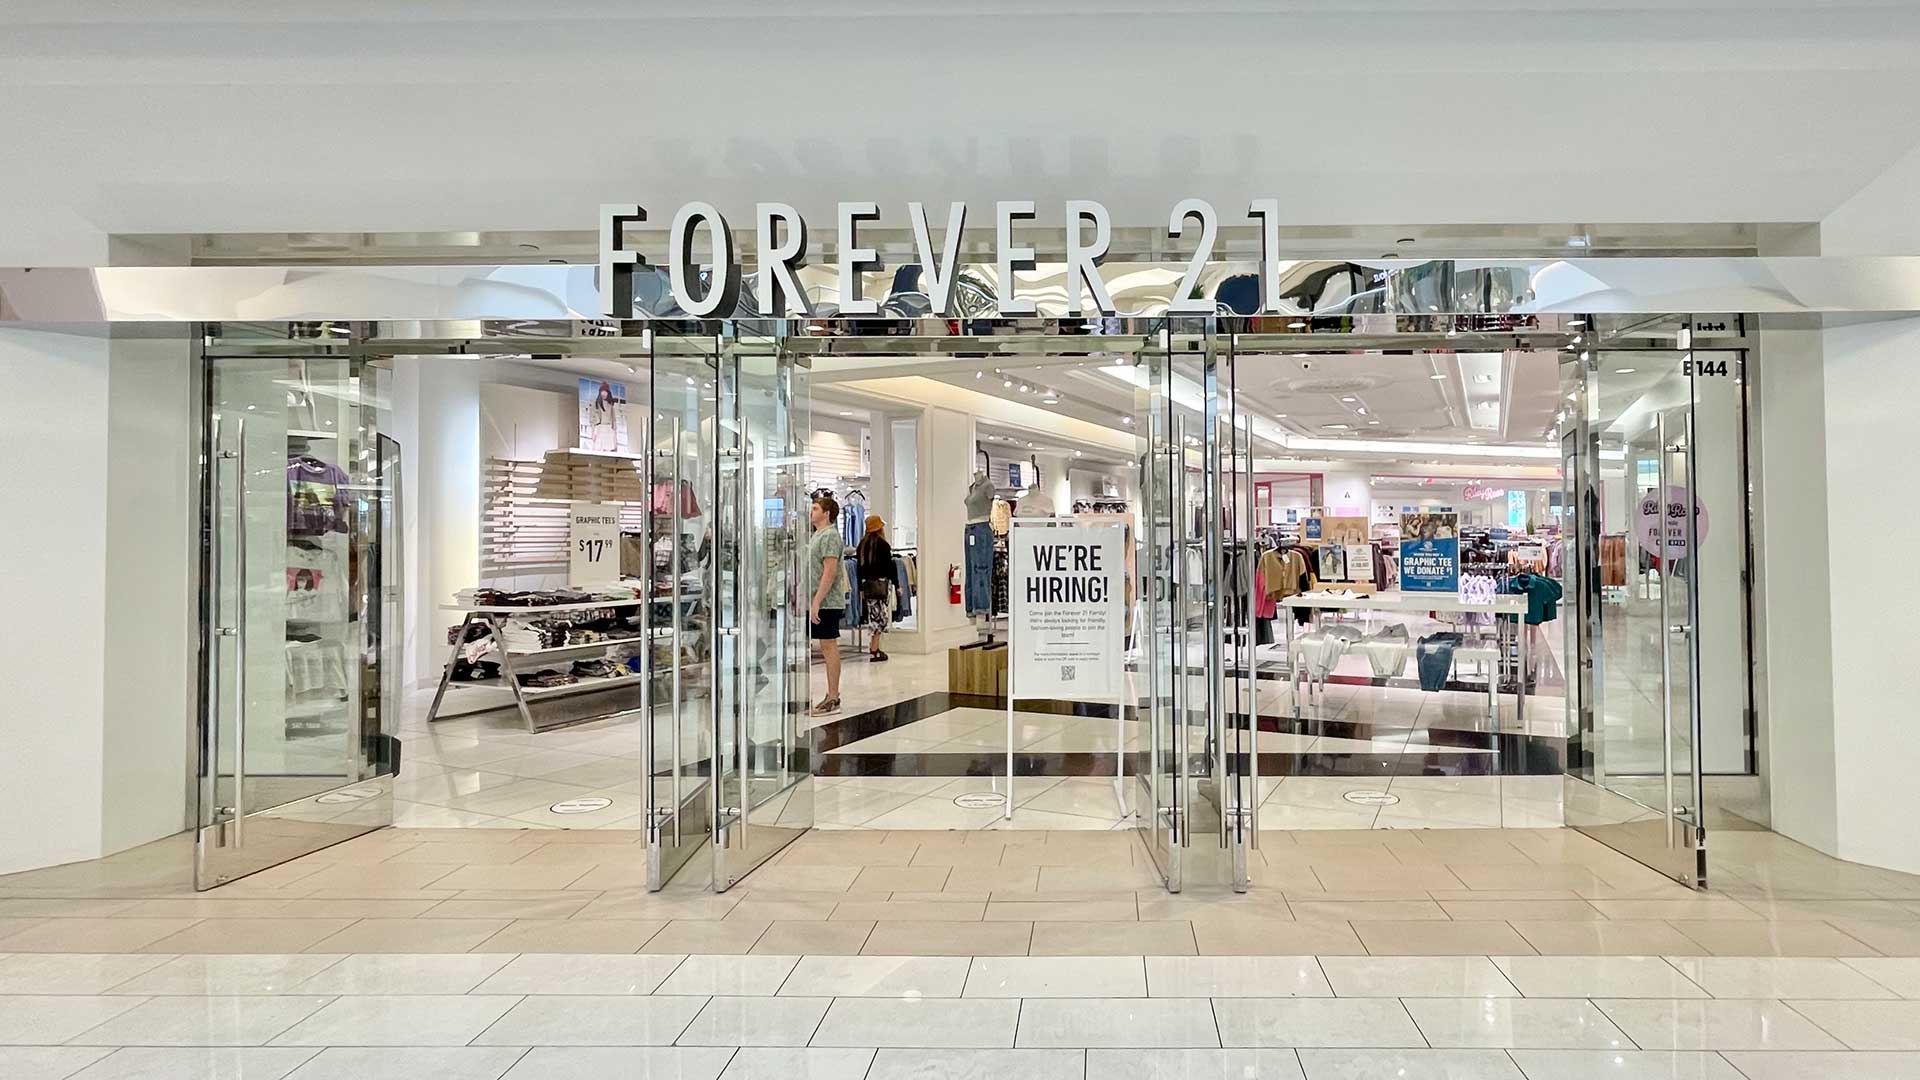 Vista panorâmica de uma loja Forever 21 — Fotografia de Stock Editorial ©  mandritoiu #215665294